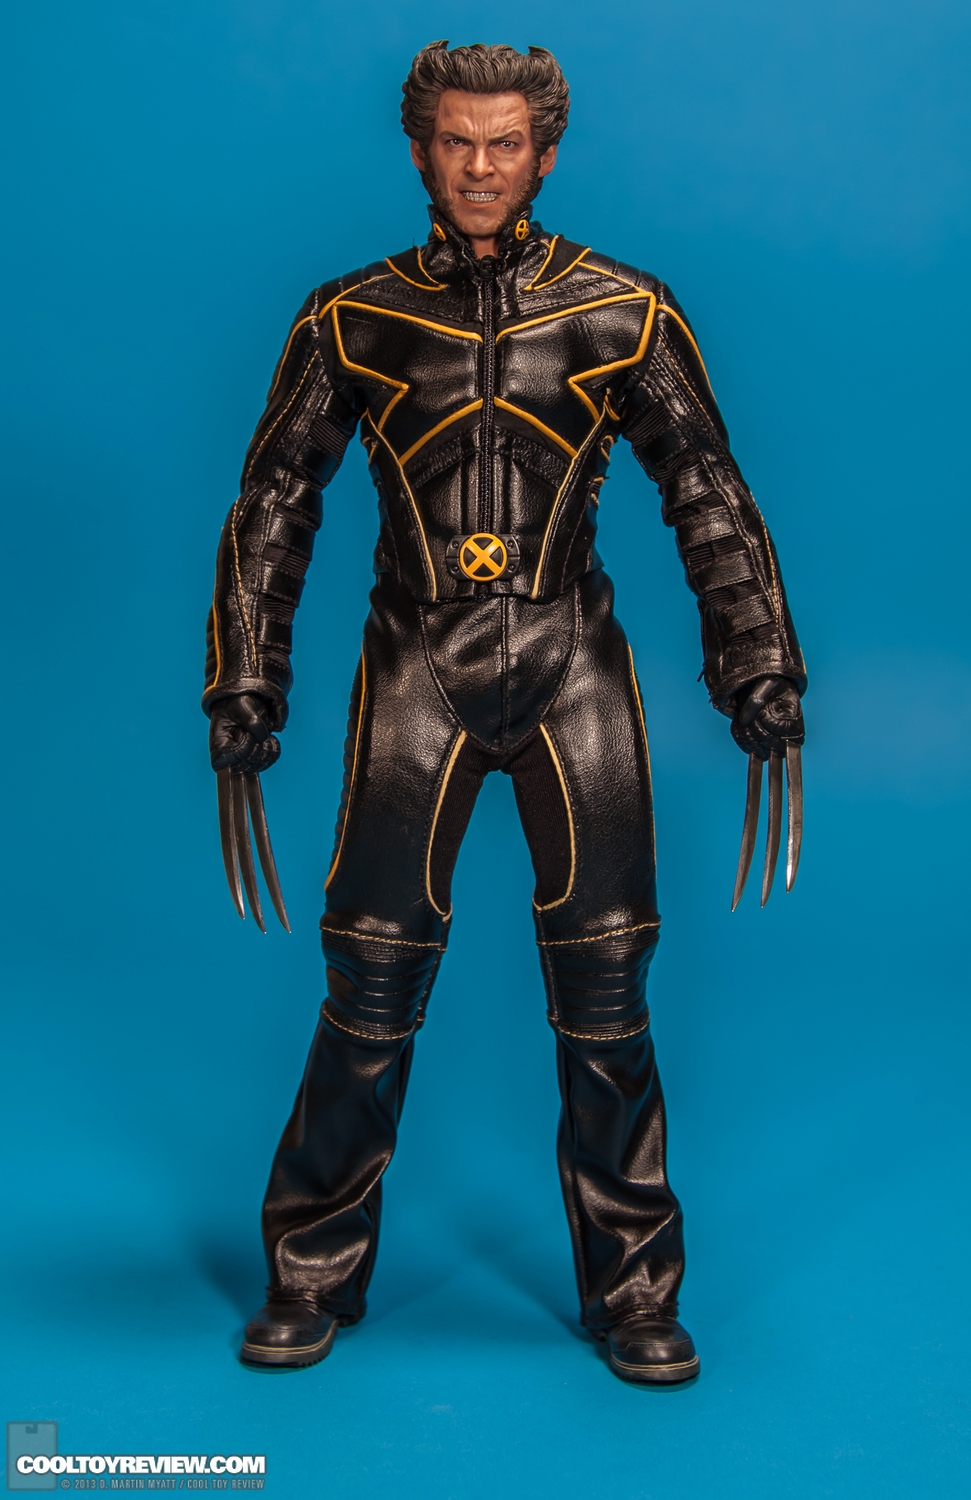 Wolverine-X-Men-3-Movie_Masterpiece-Series-Hot-Toys-001.jpg